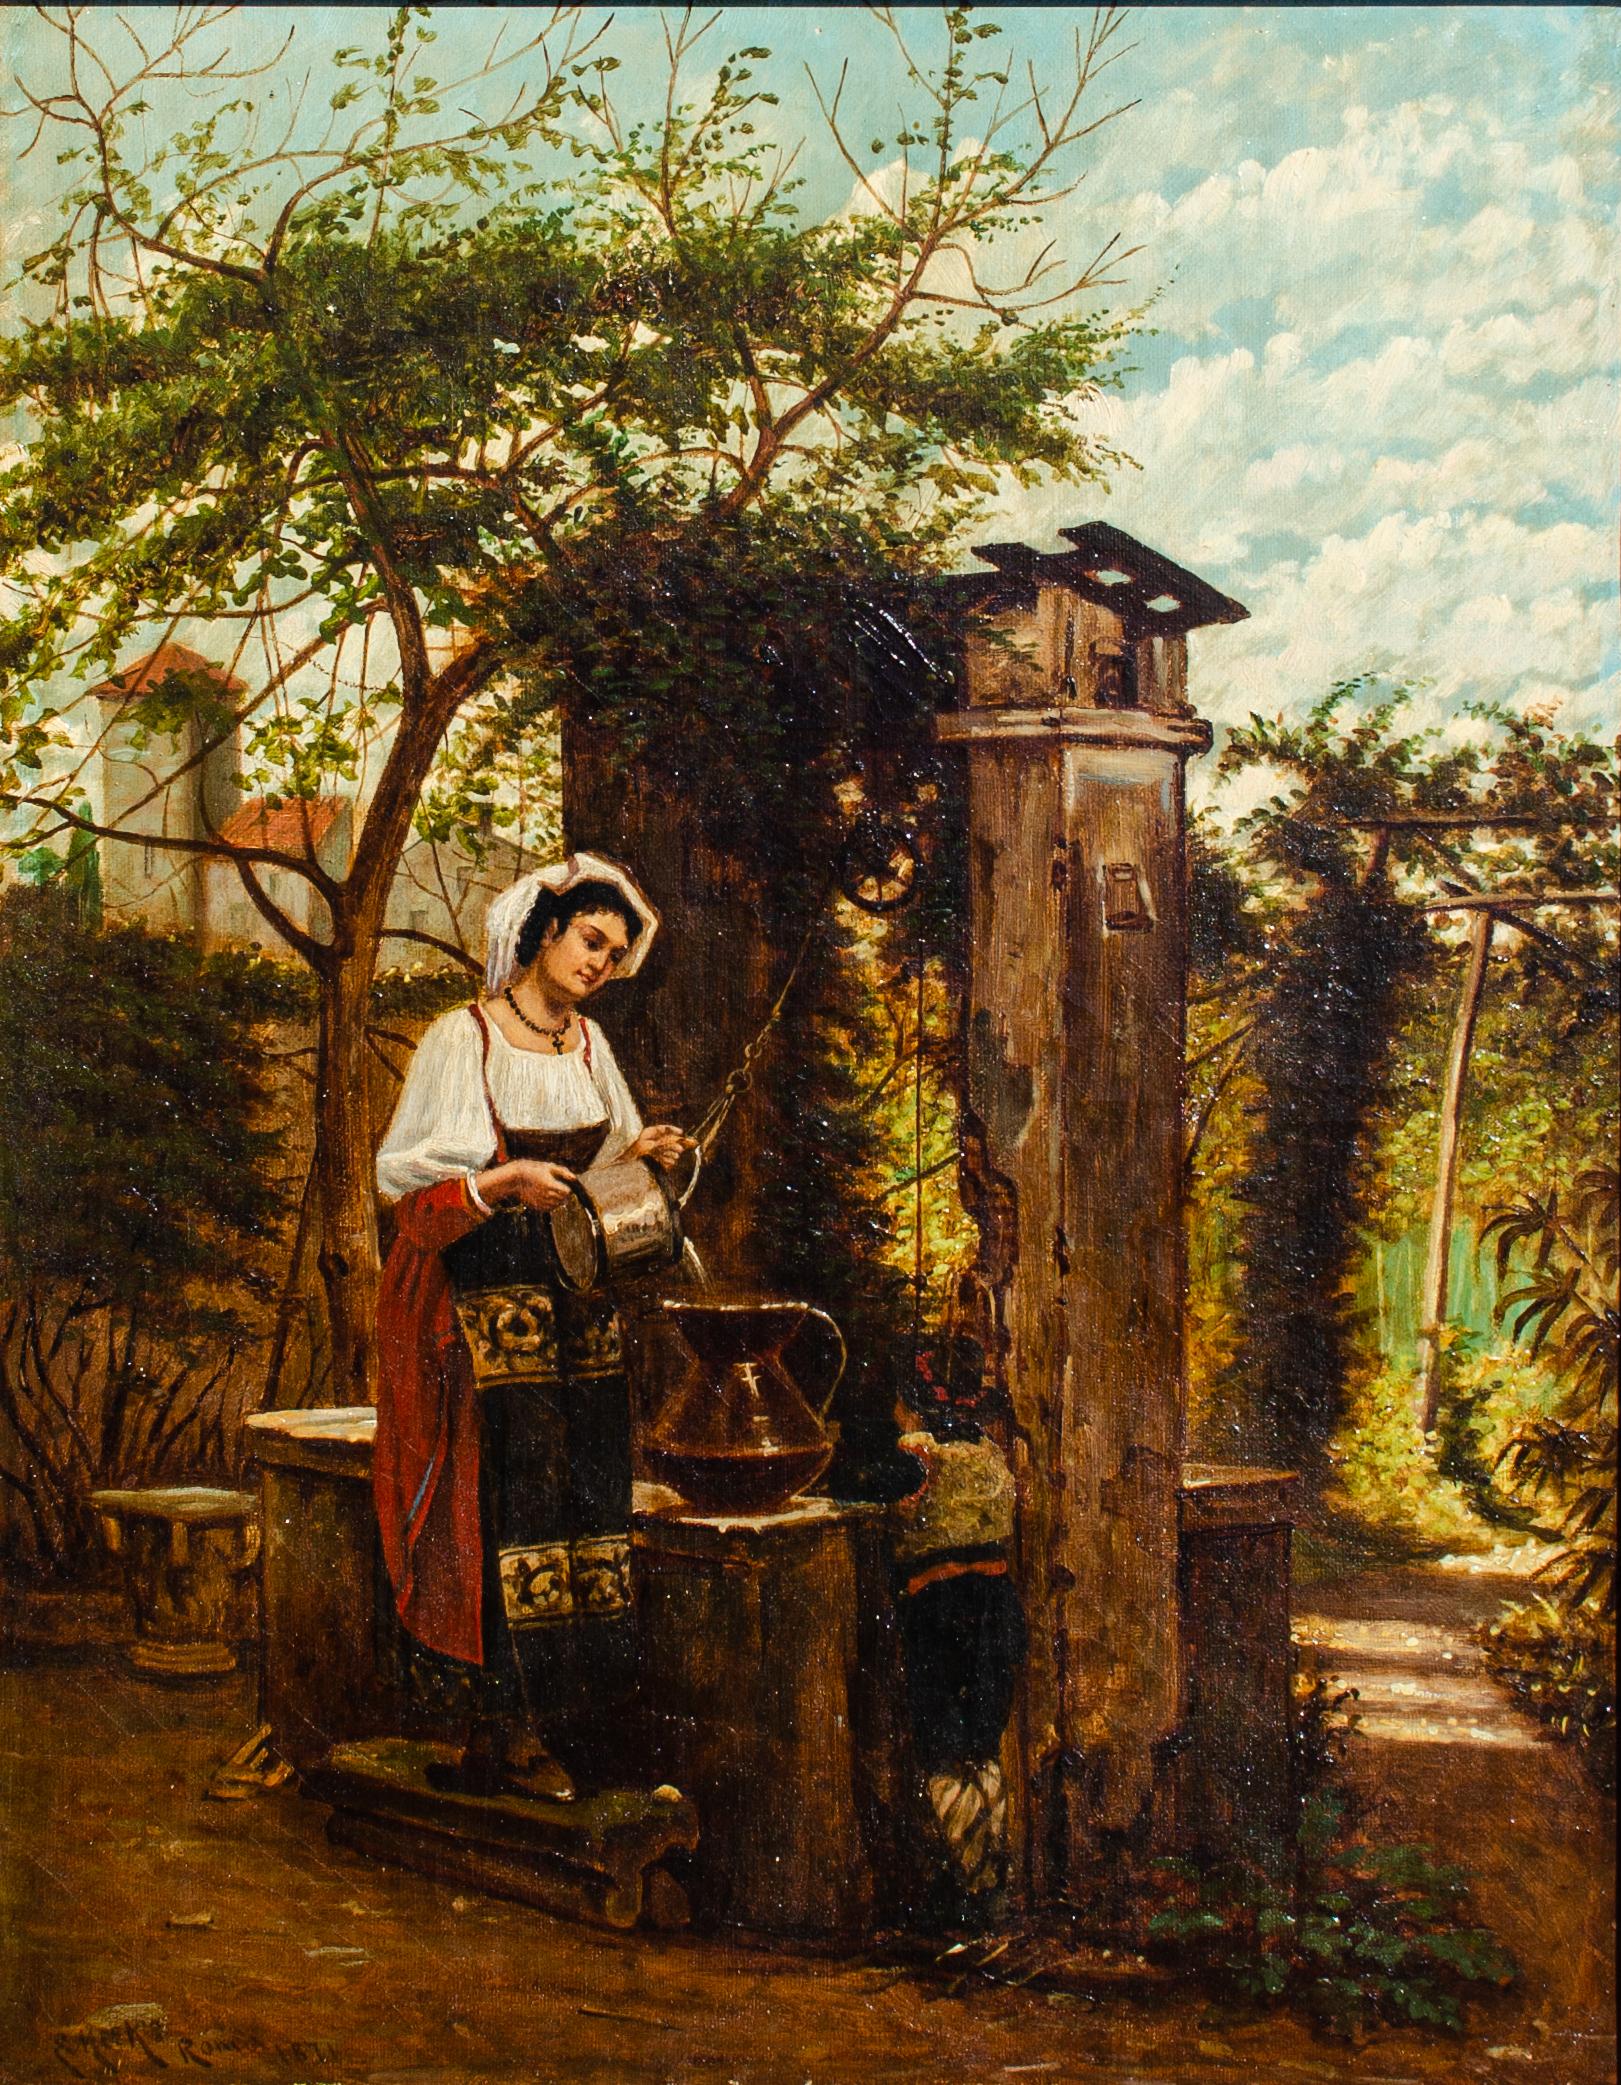 Figurative Painting eugene meeks - Peinture à l'huile anglaise d'Eugène Meeks représentant une femme dans un tableau intitulé « Roma », daté de 1871